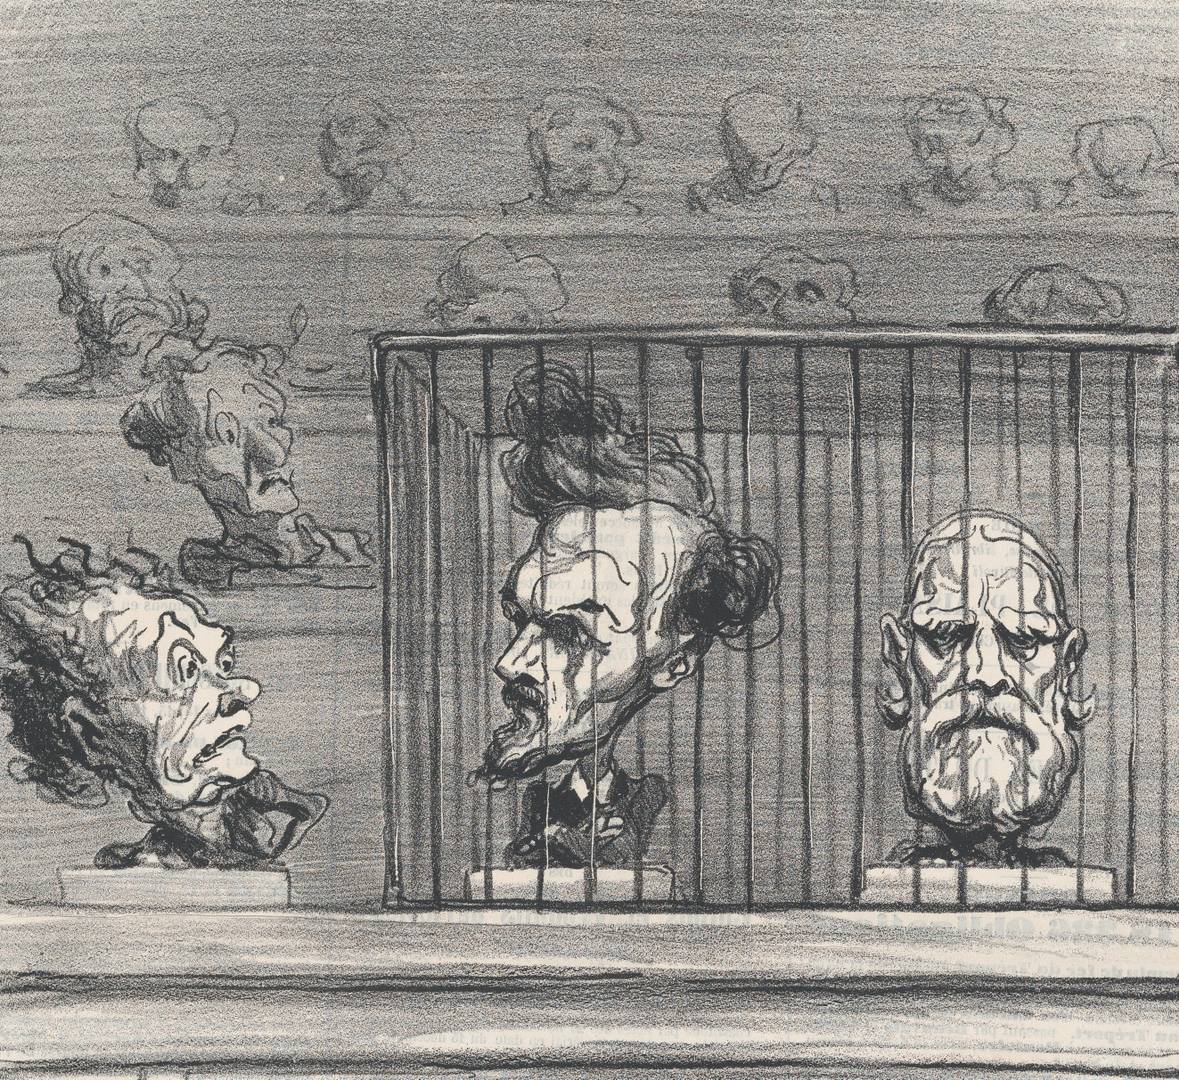 Оноре Домье. Предложение новой политической системы для лучшей изоляции реакционеров. 1870